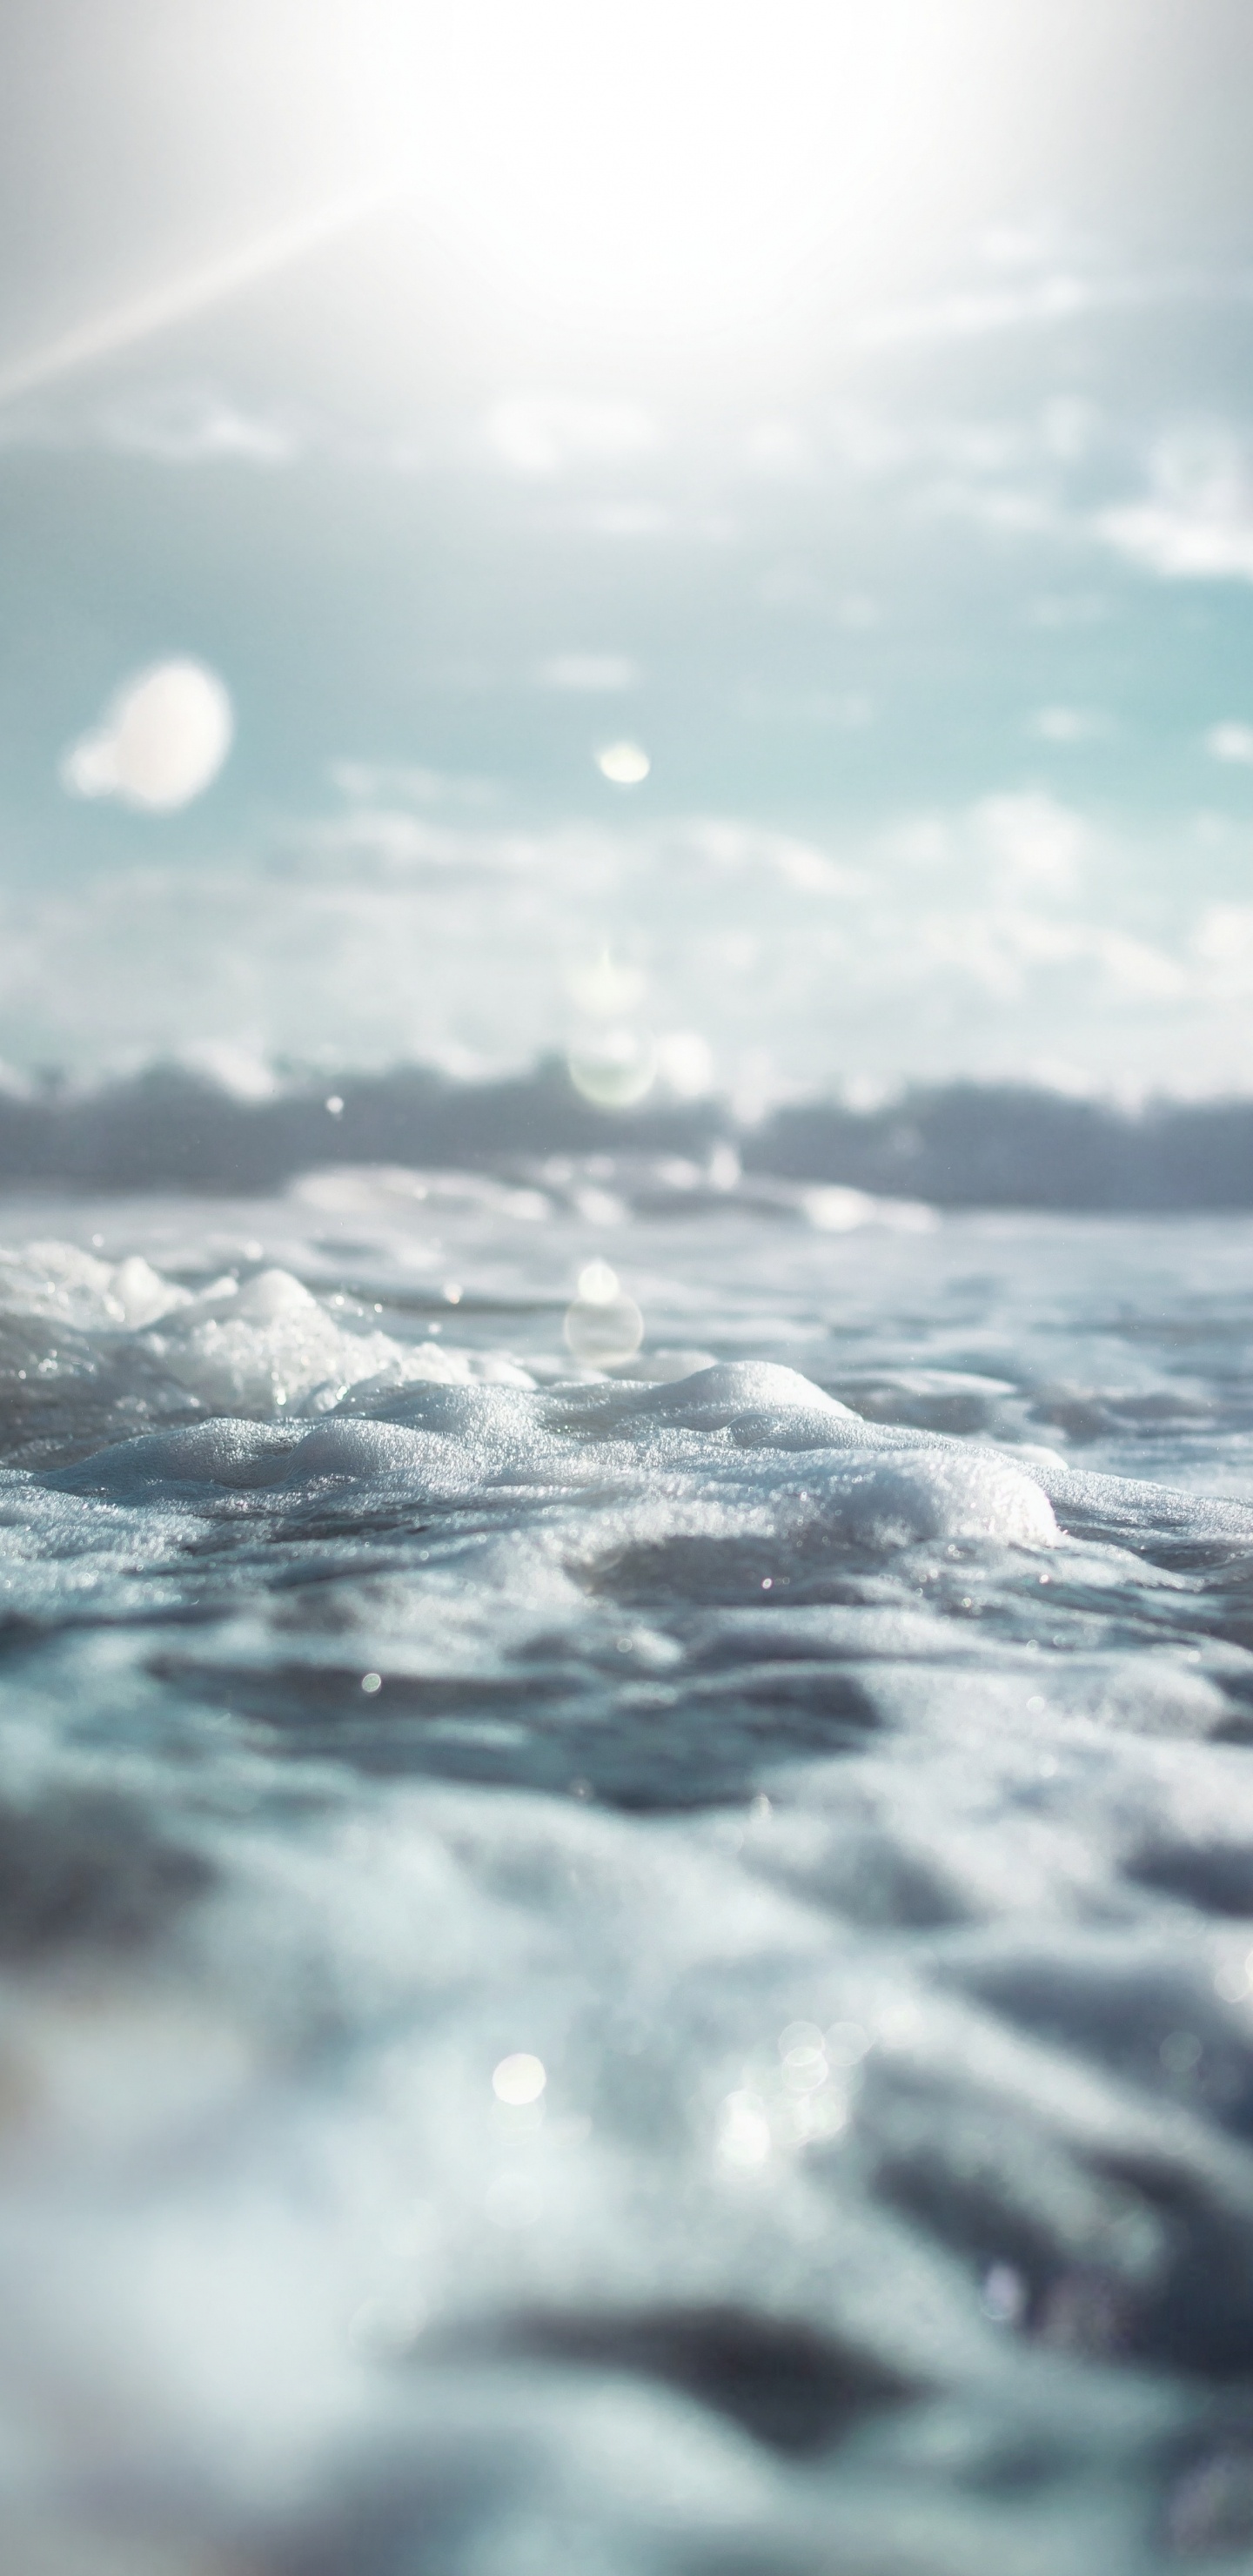 Agua, Mar, Oceano, el Viento de la Onda, Ambiente. Wallpaper in 1440x2960 Resolution